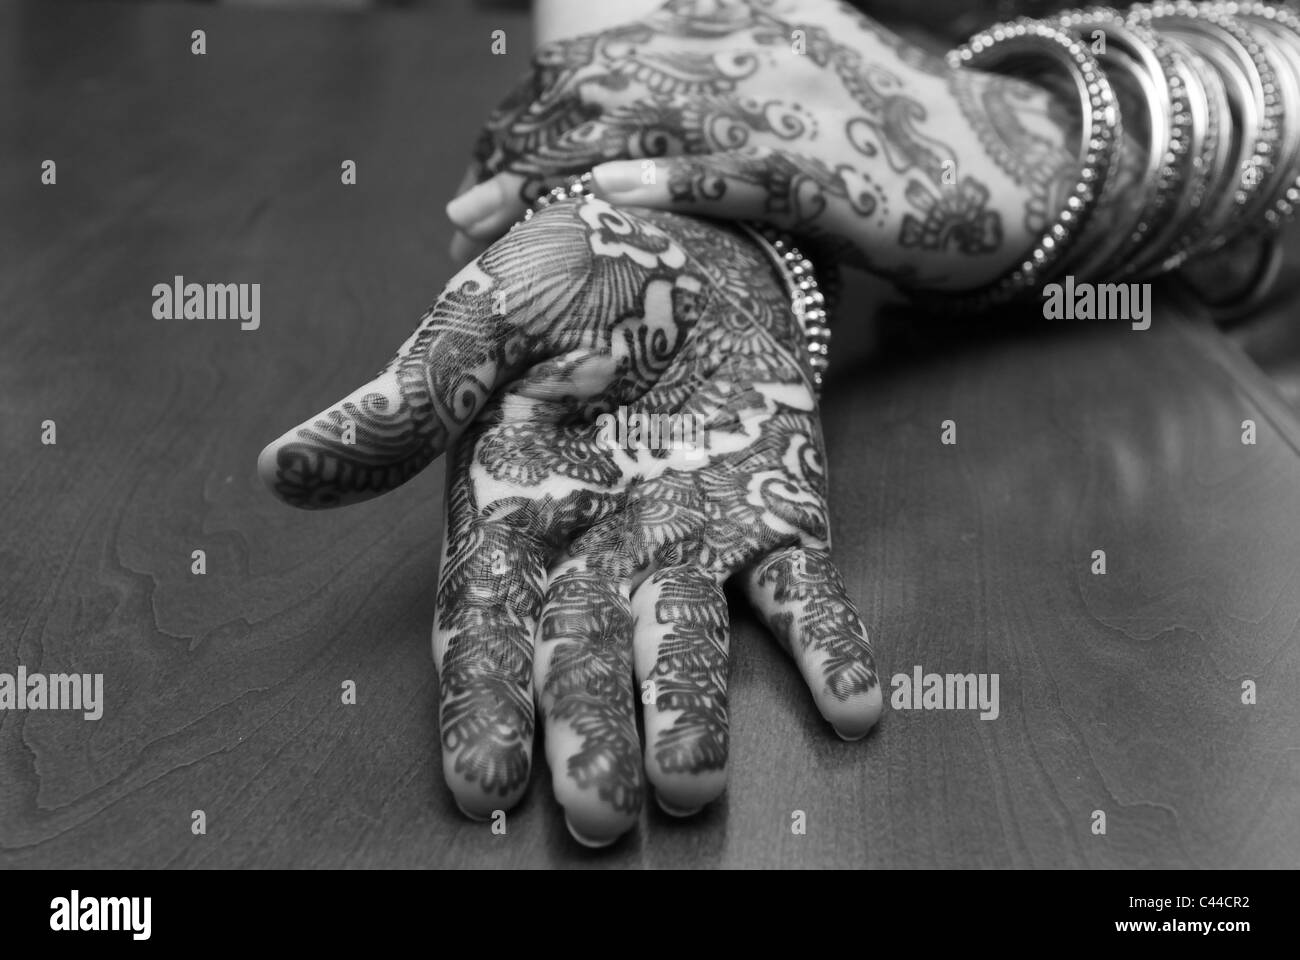 Photo noir/blanc de la mains, montrant le contraste du dessin à la main. L'art du henné Banque D'Images